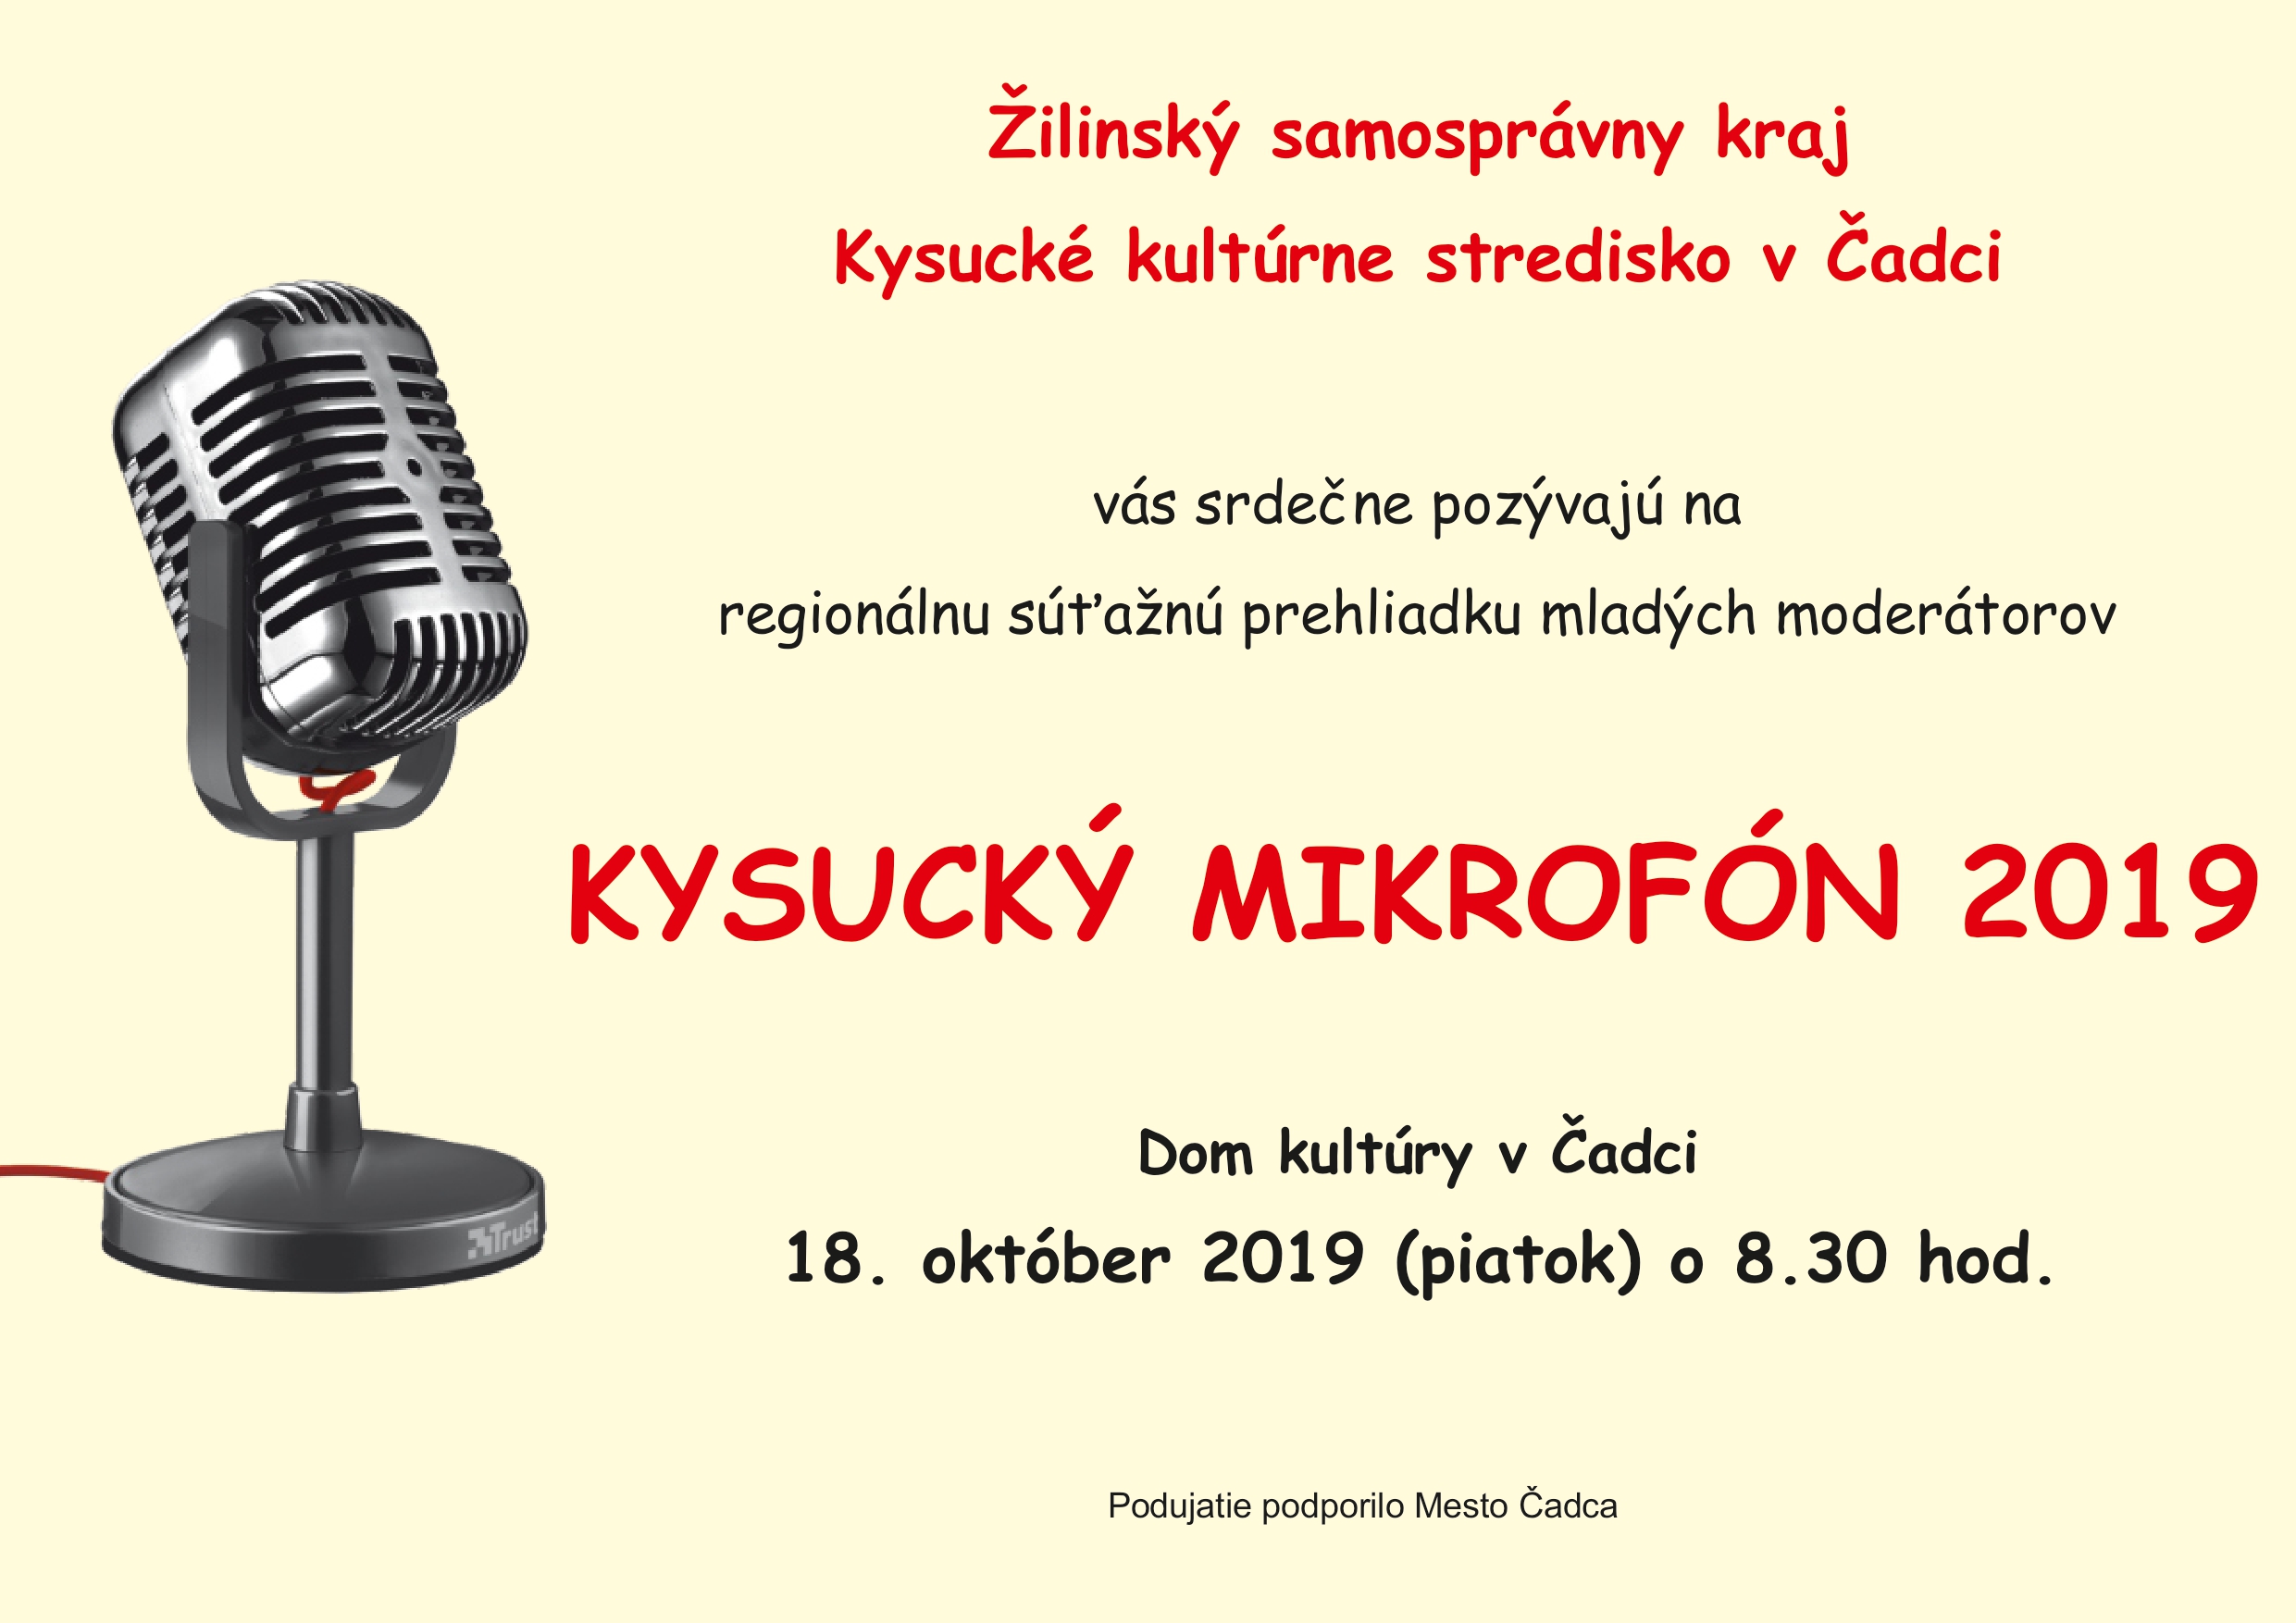 Kysucký mikrofon 2019 page 0001